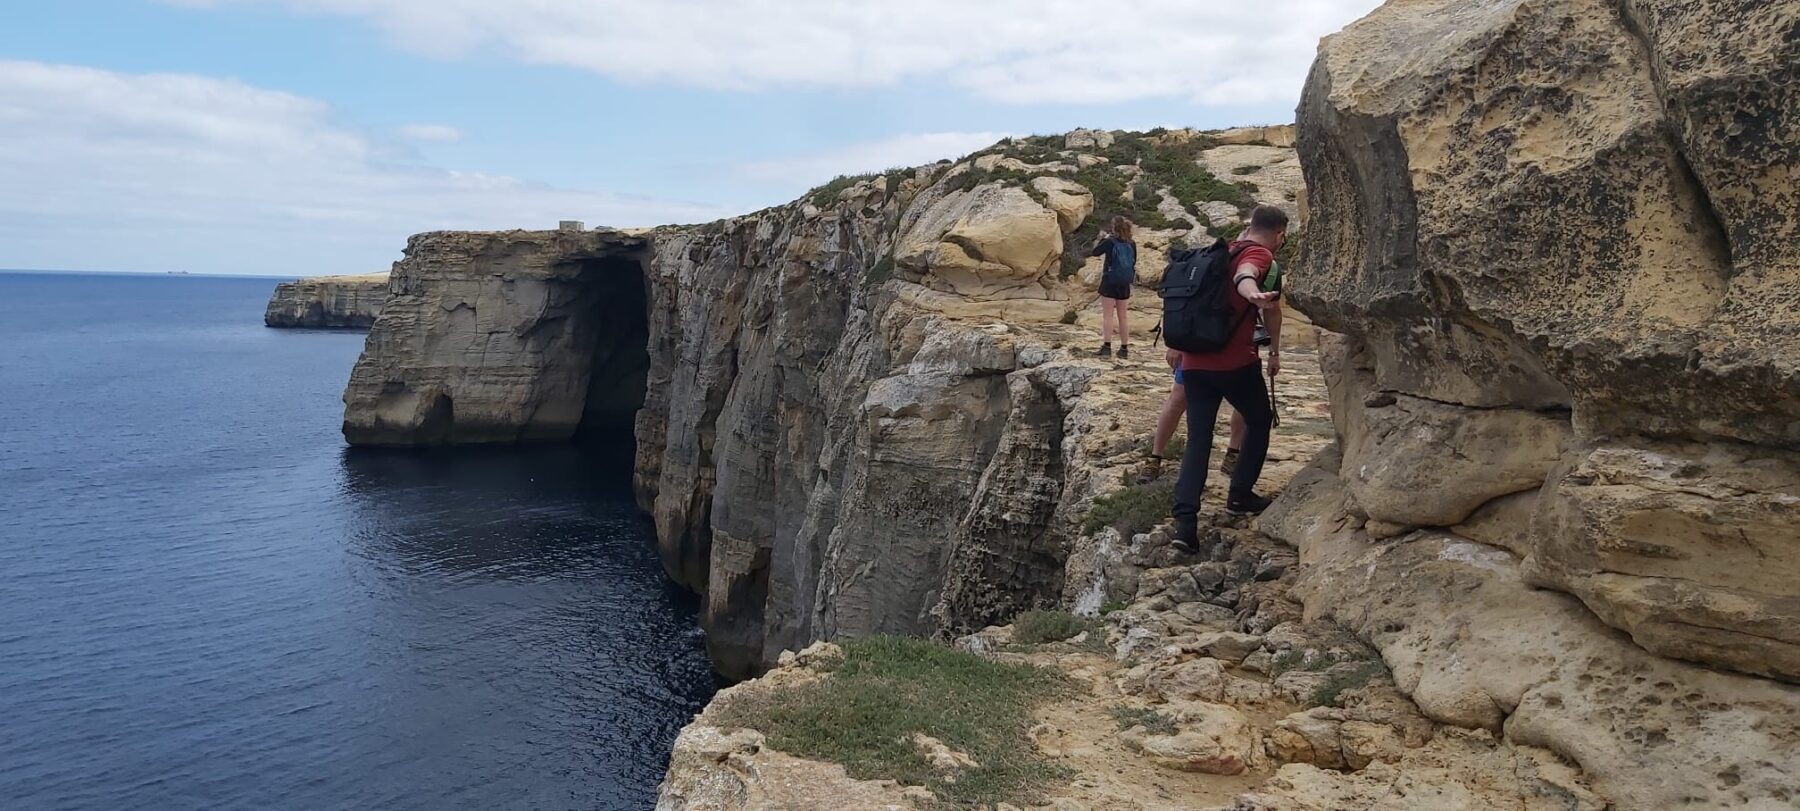 Hikers lopen over de rotskliffen van Malta 